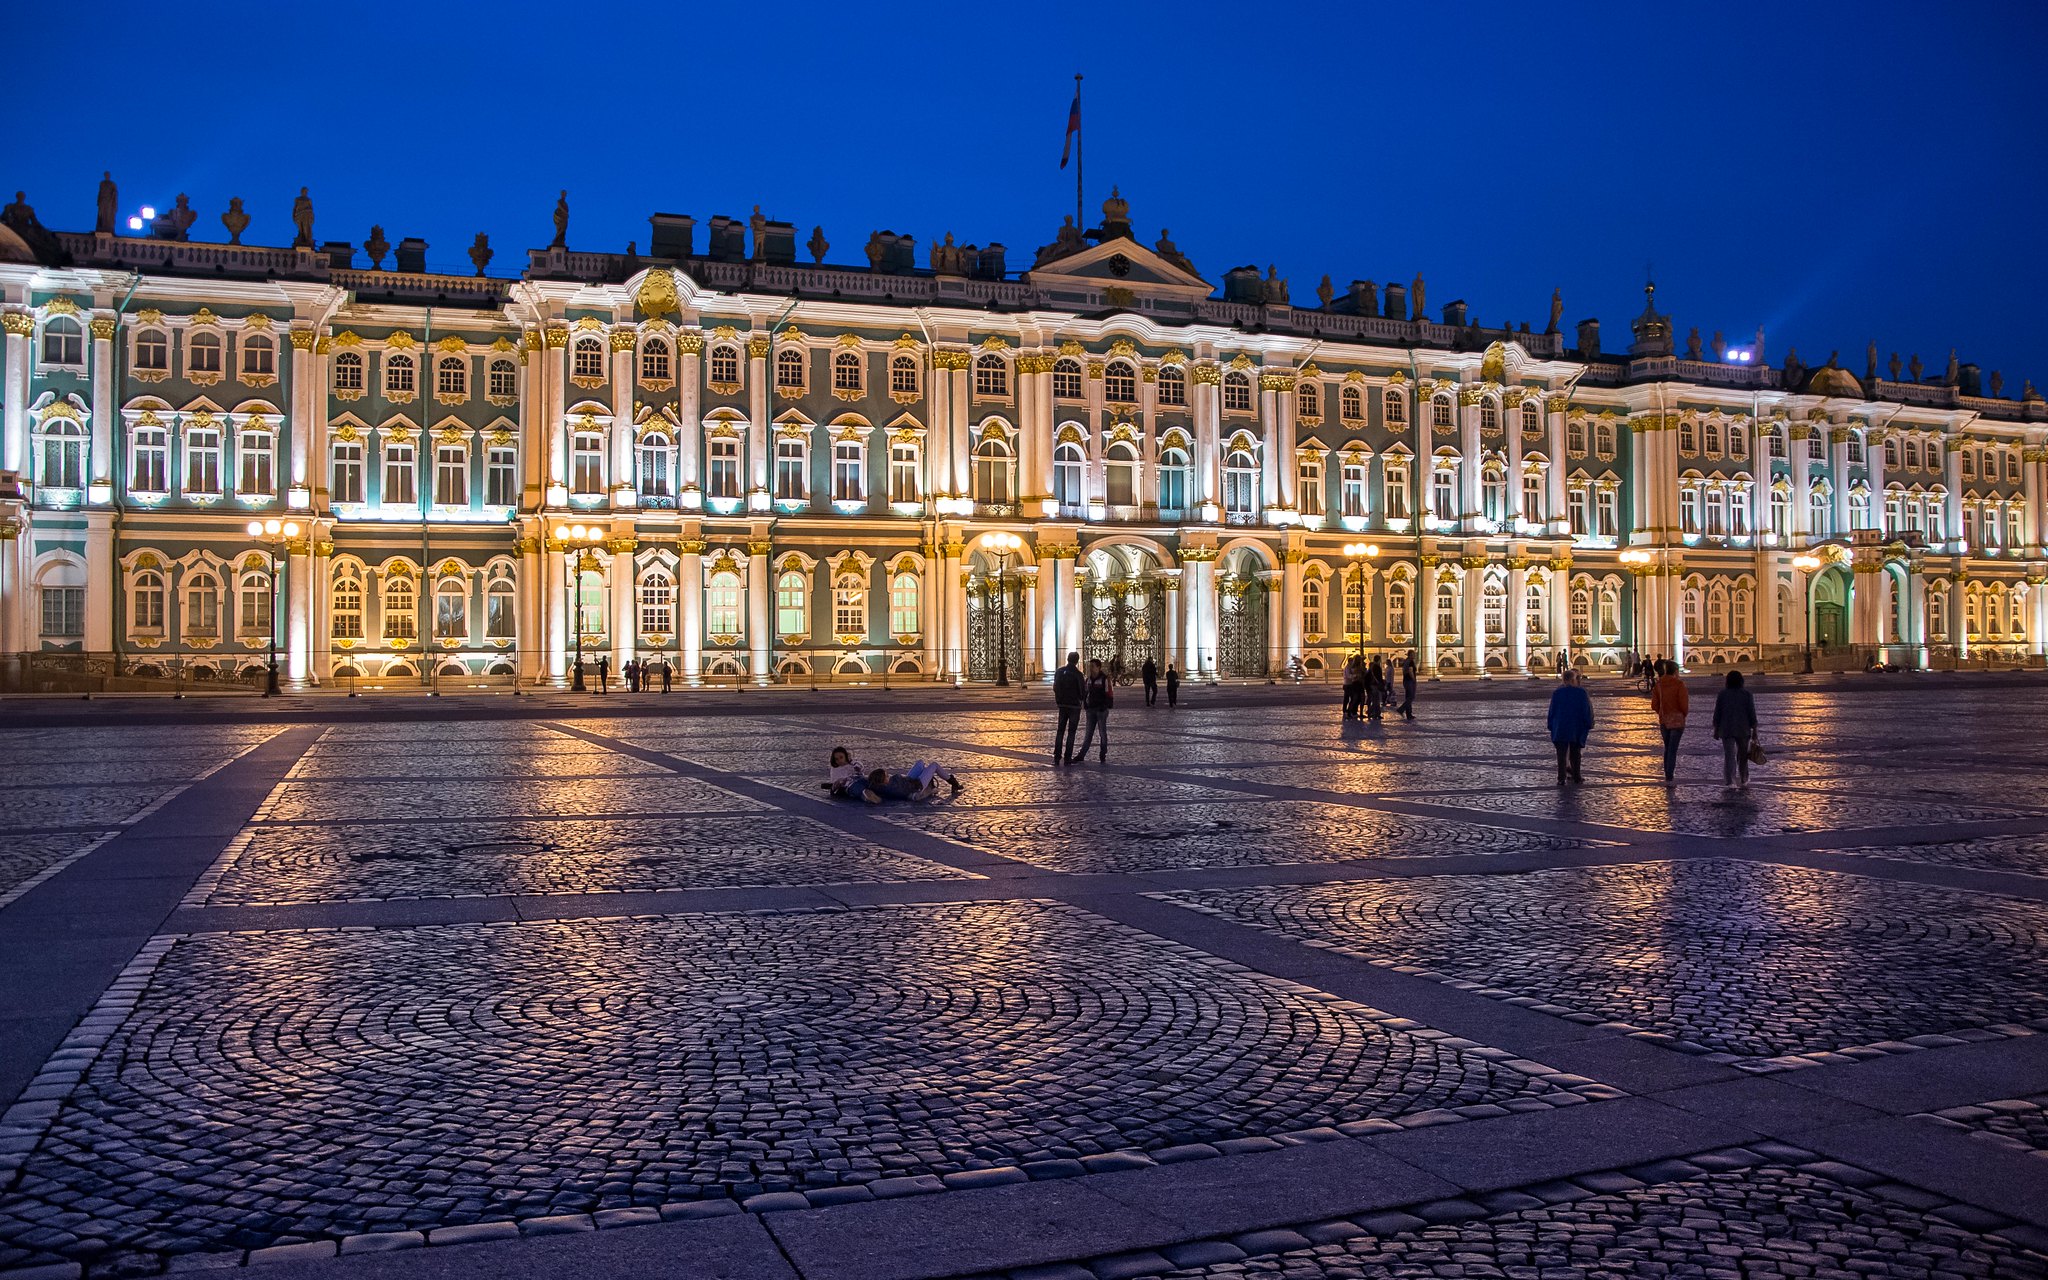 Зимний дворец, расположенный в Санкт-Петербурге